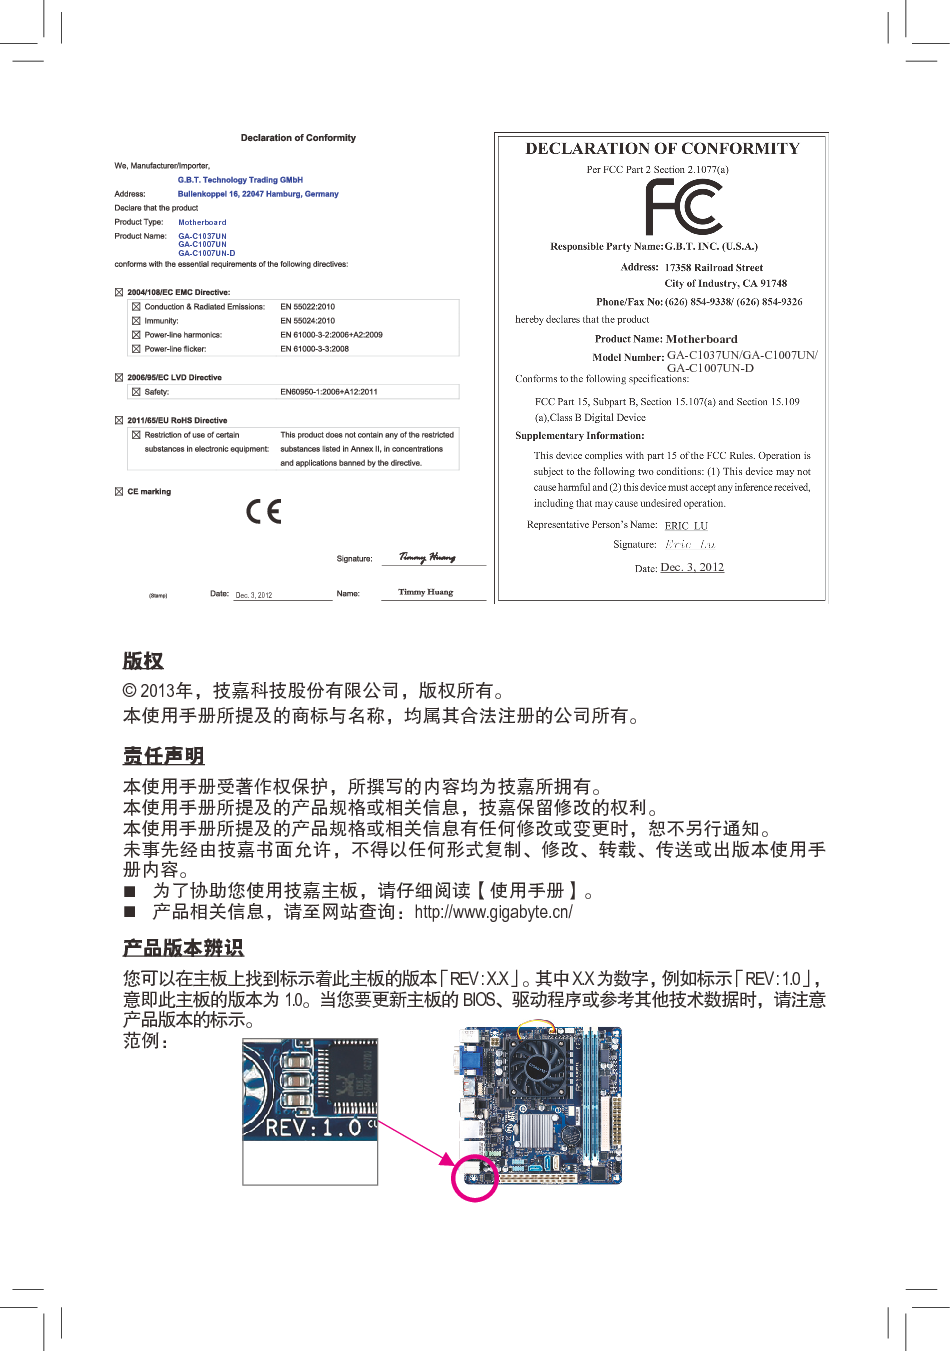 技嘉 Gigabyte GA-C1007UN 使用手册 第1页